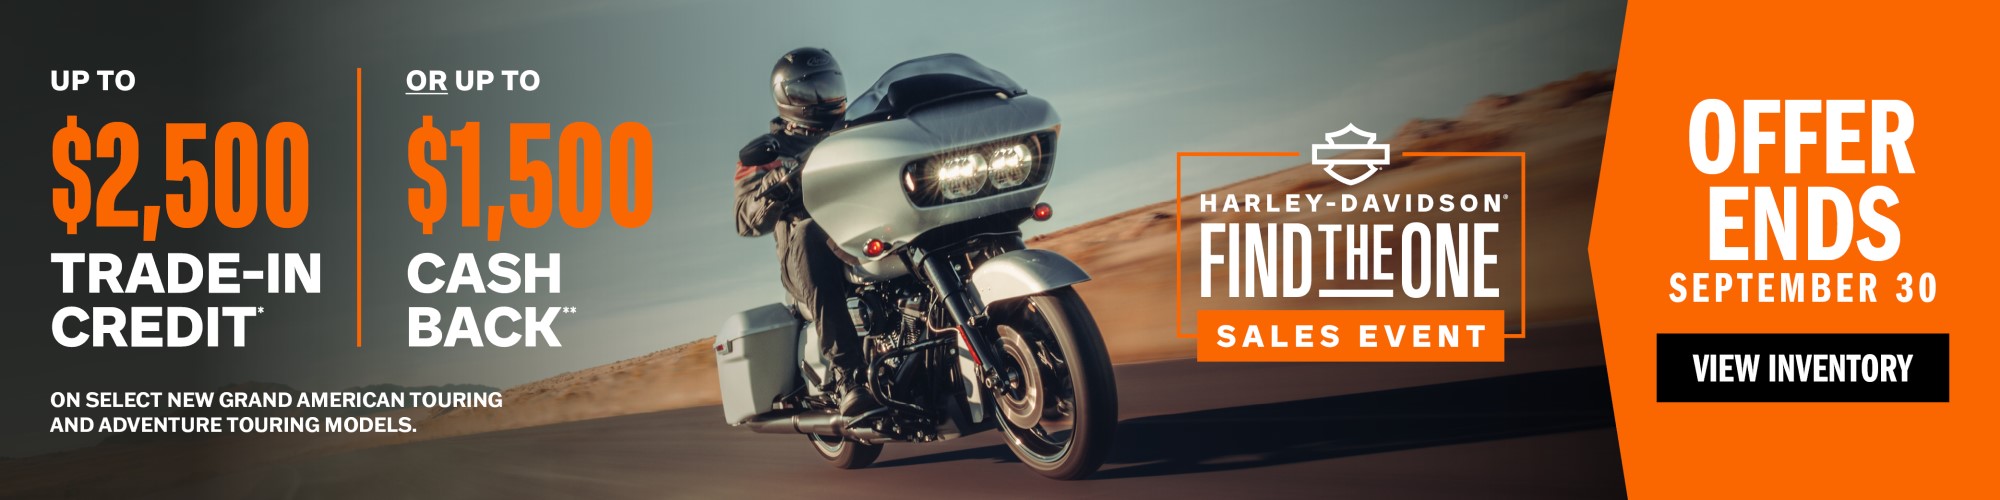 Find the One - 202319 at Destination Harley-Davidson®, Tacoma, WA 98424